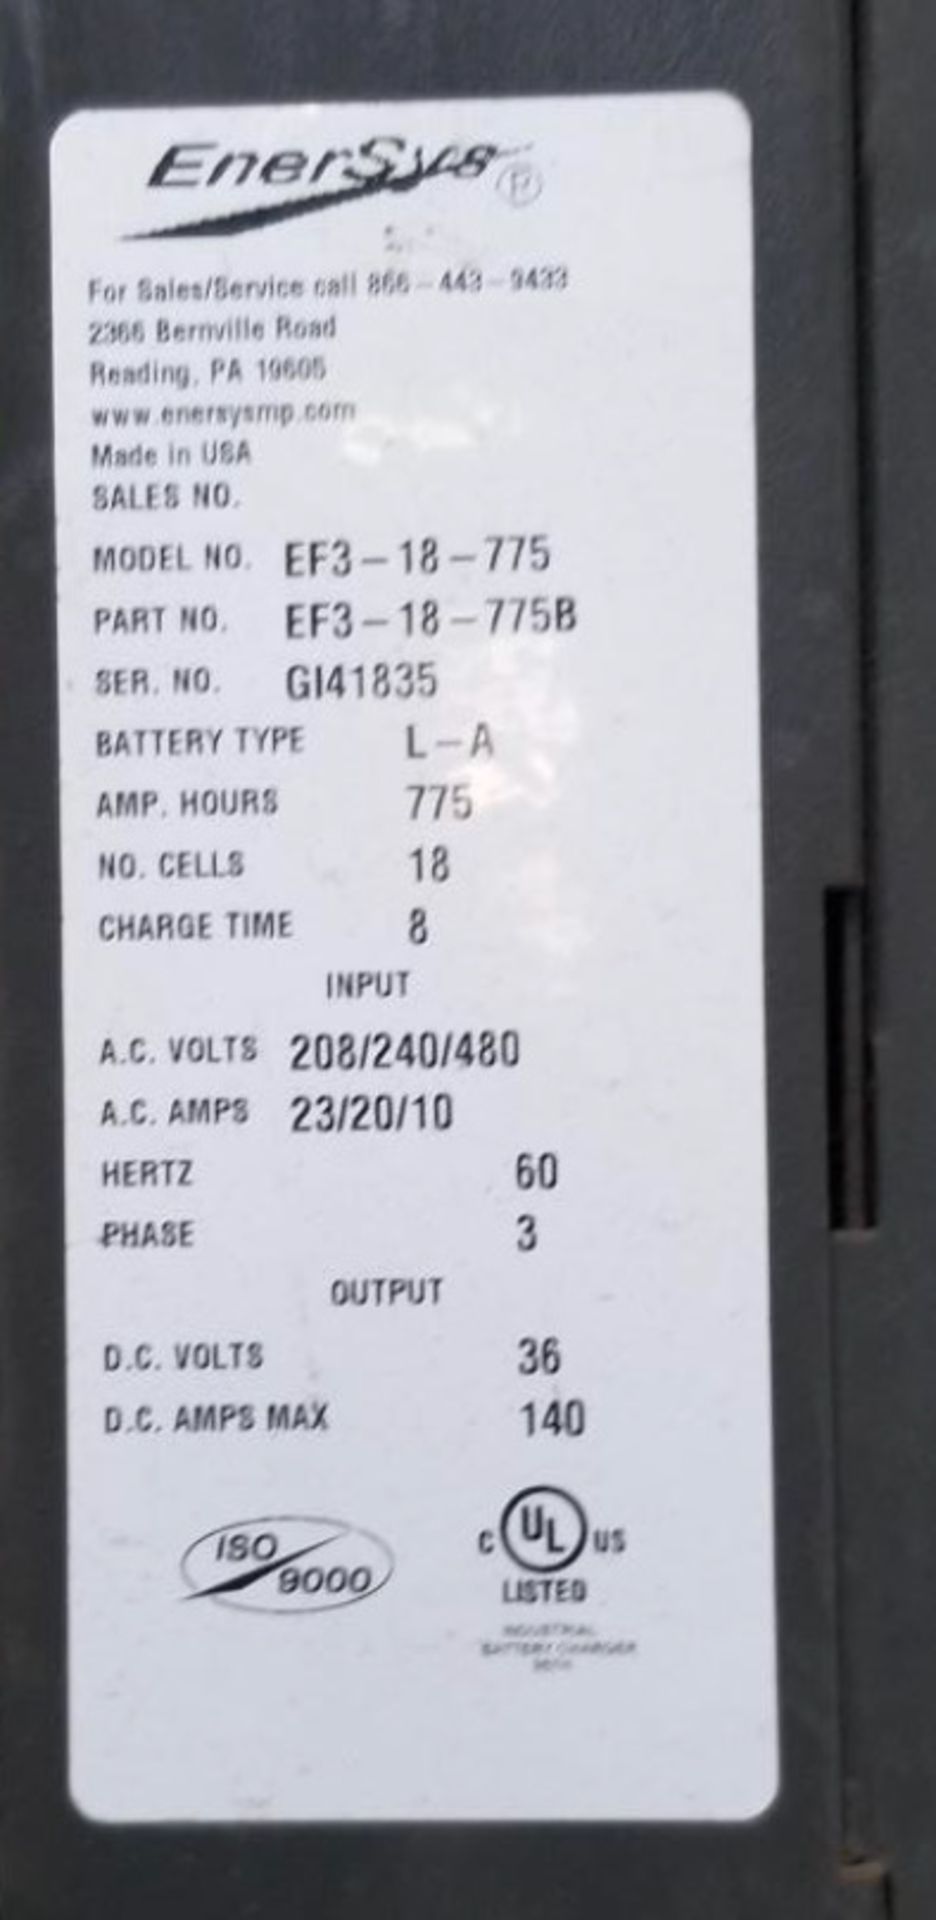 (4) Enersys Enforcer Ferro Forklift Battery Chargers, 36V / 140 Amps Max, Models EF3-18-775 - Image 6 of 10